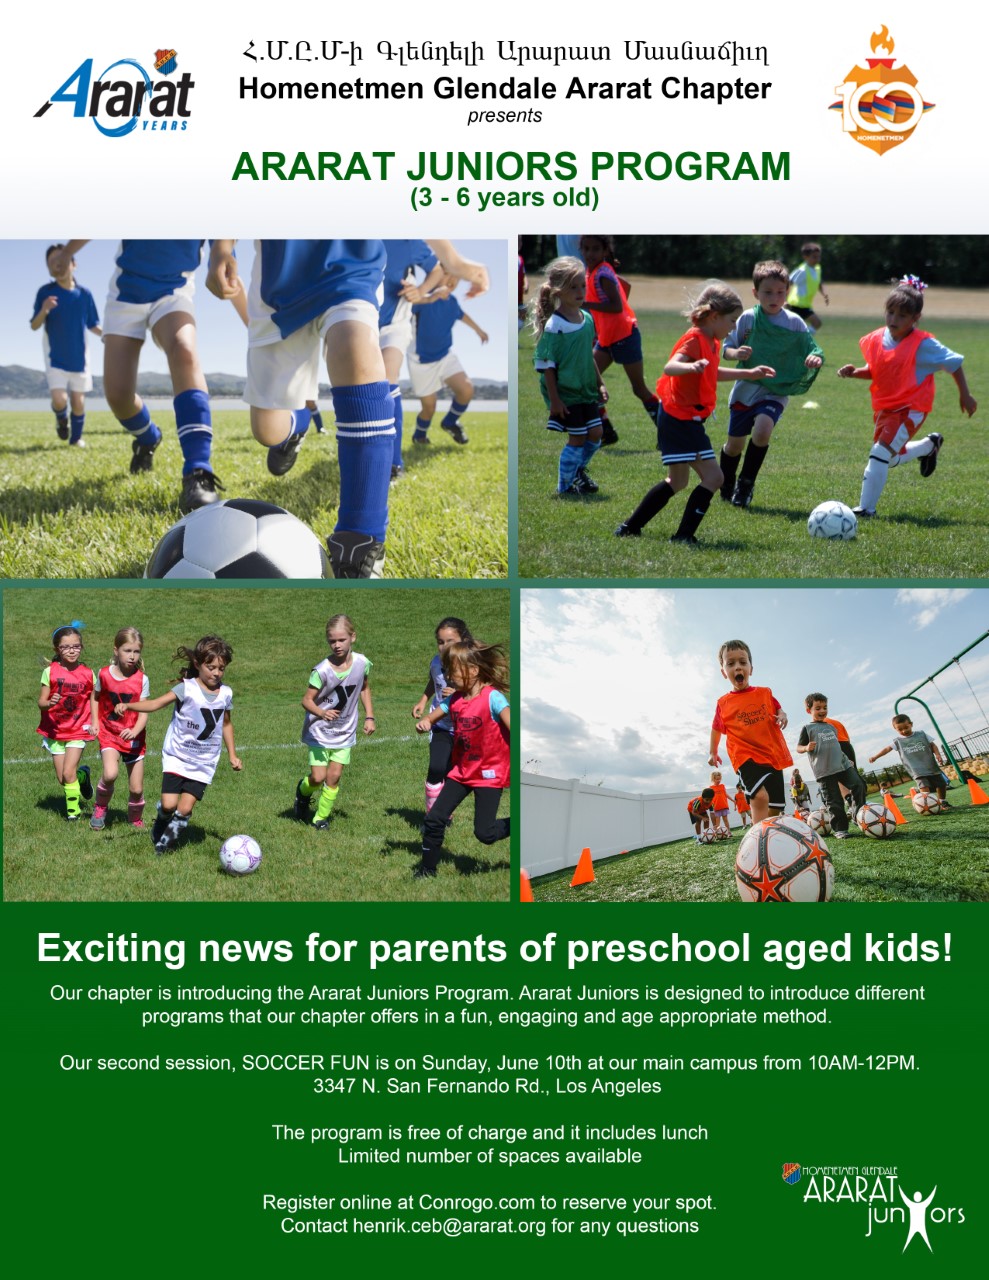 Ararat Juniors Program SOCCER FUN